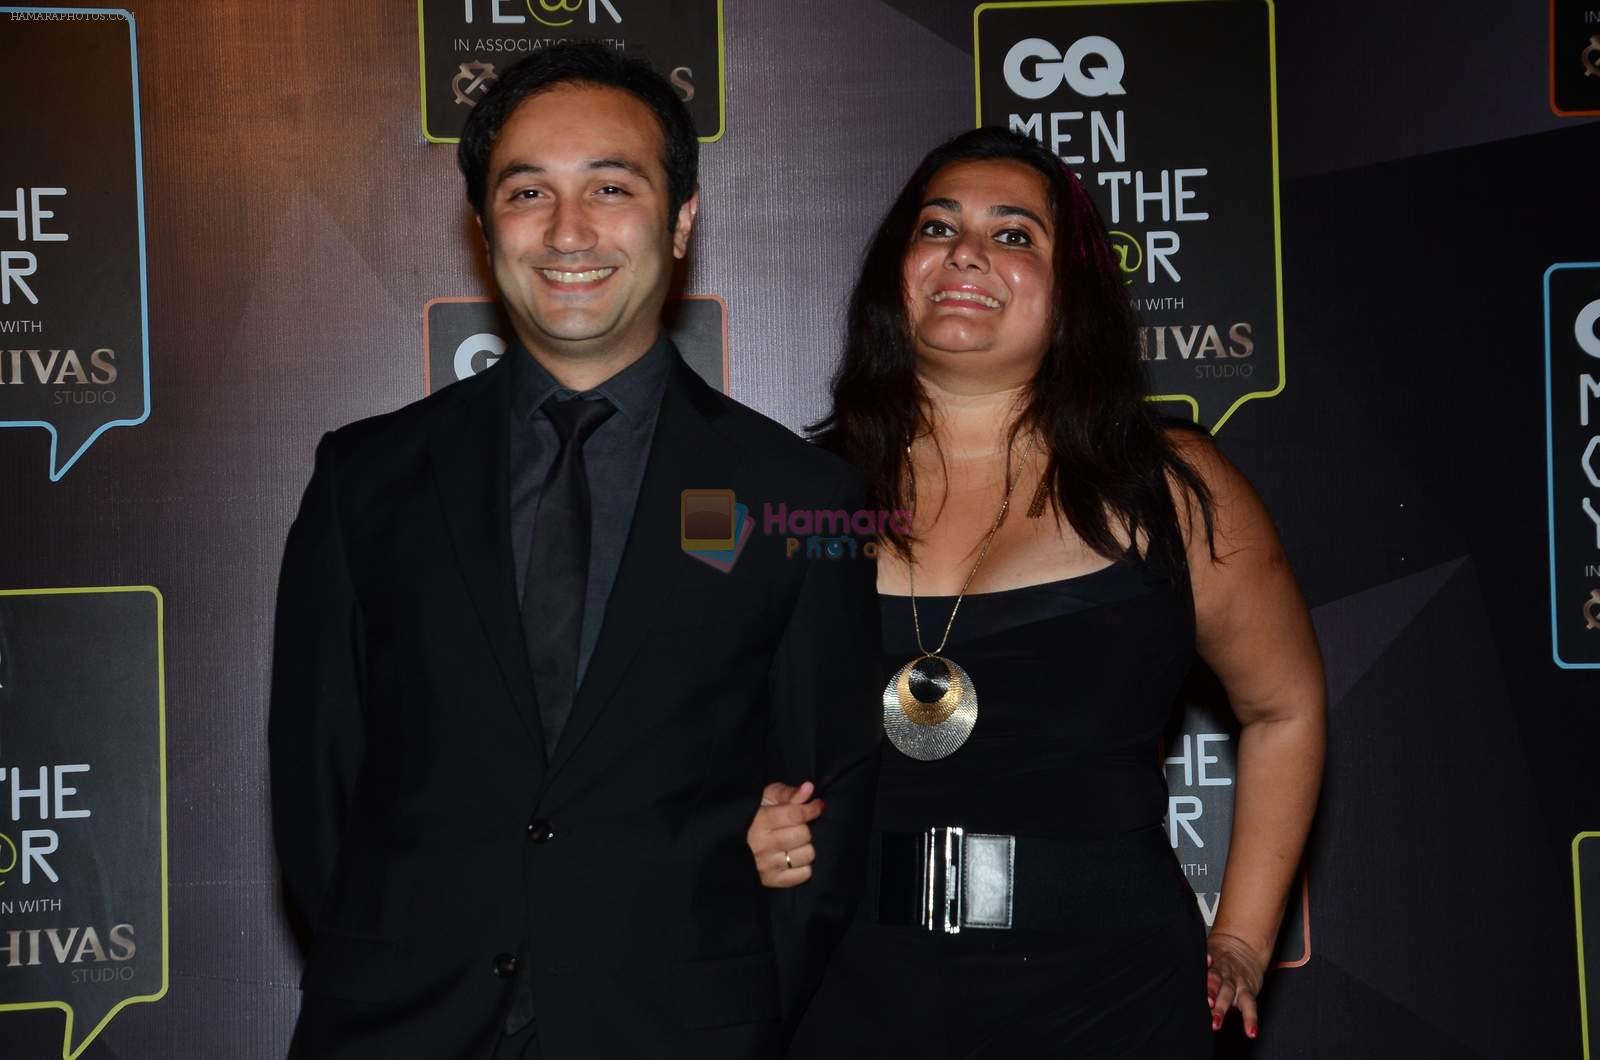 Divya Palat, Aditya Hitkari at GQ men of the year 2015 on 26th Sept 2015